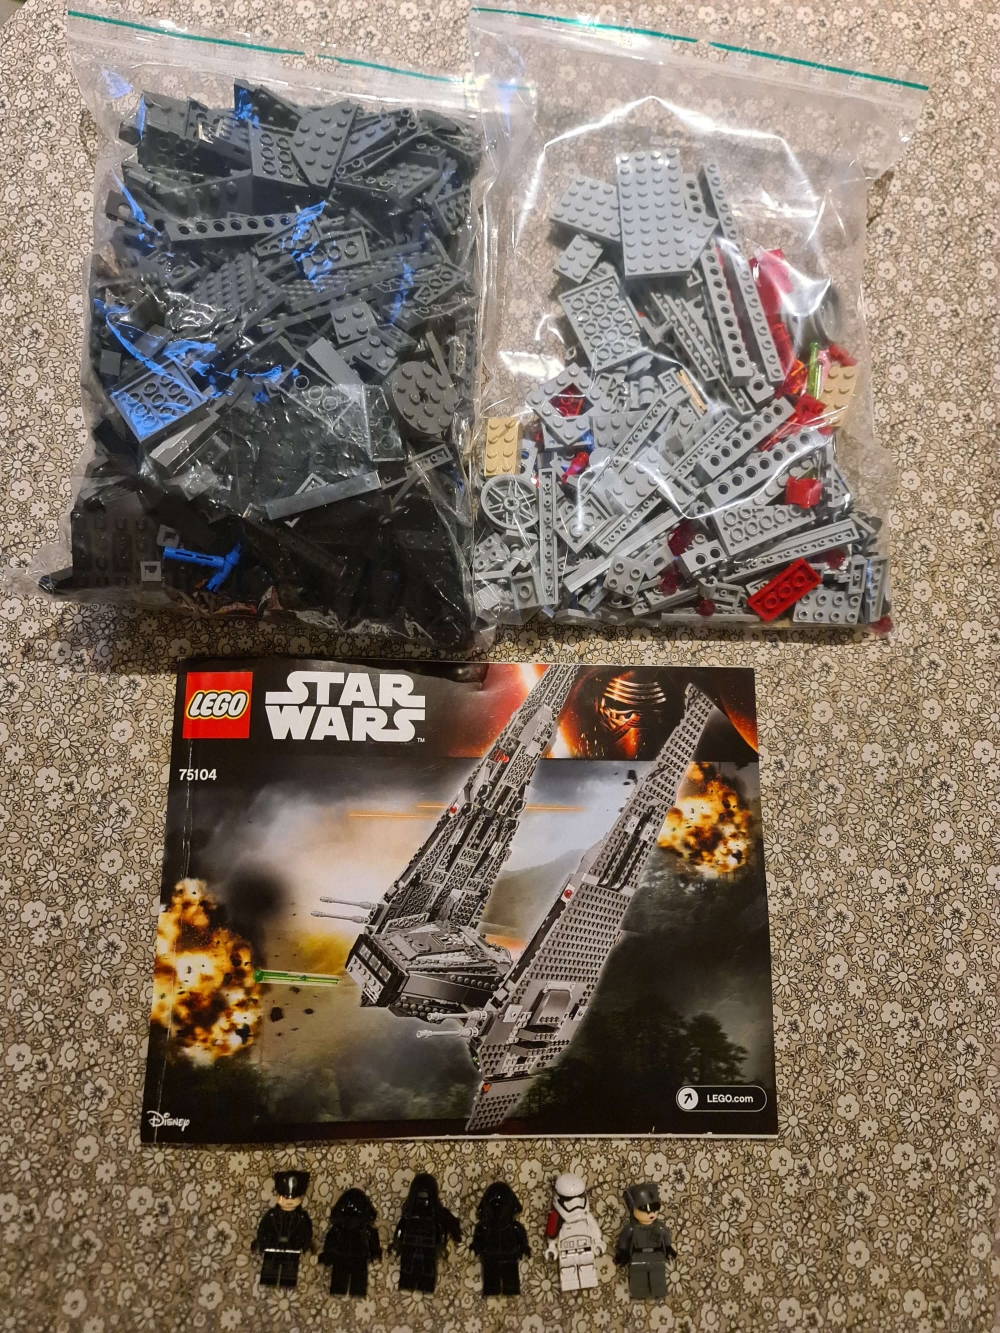 Sett 75104 fra Lego Star Wars : Edpisode 7 serien
Som nytt.
Komplett med manual.